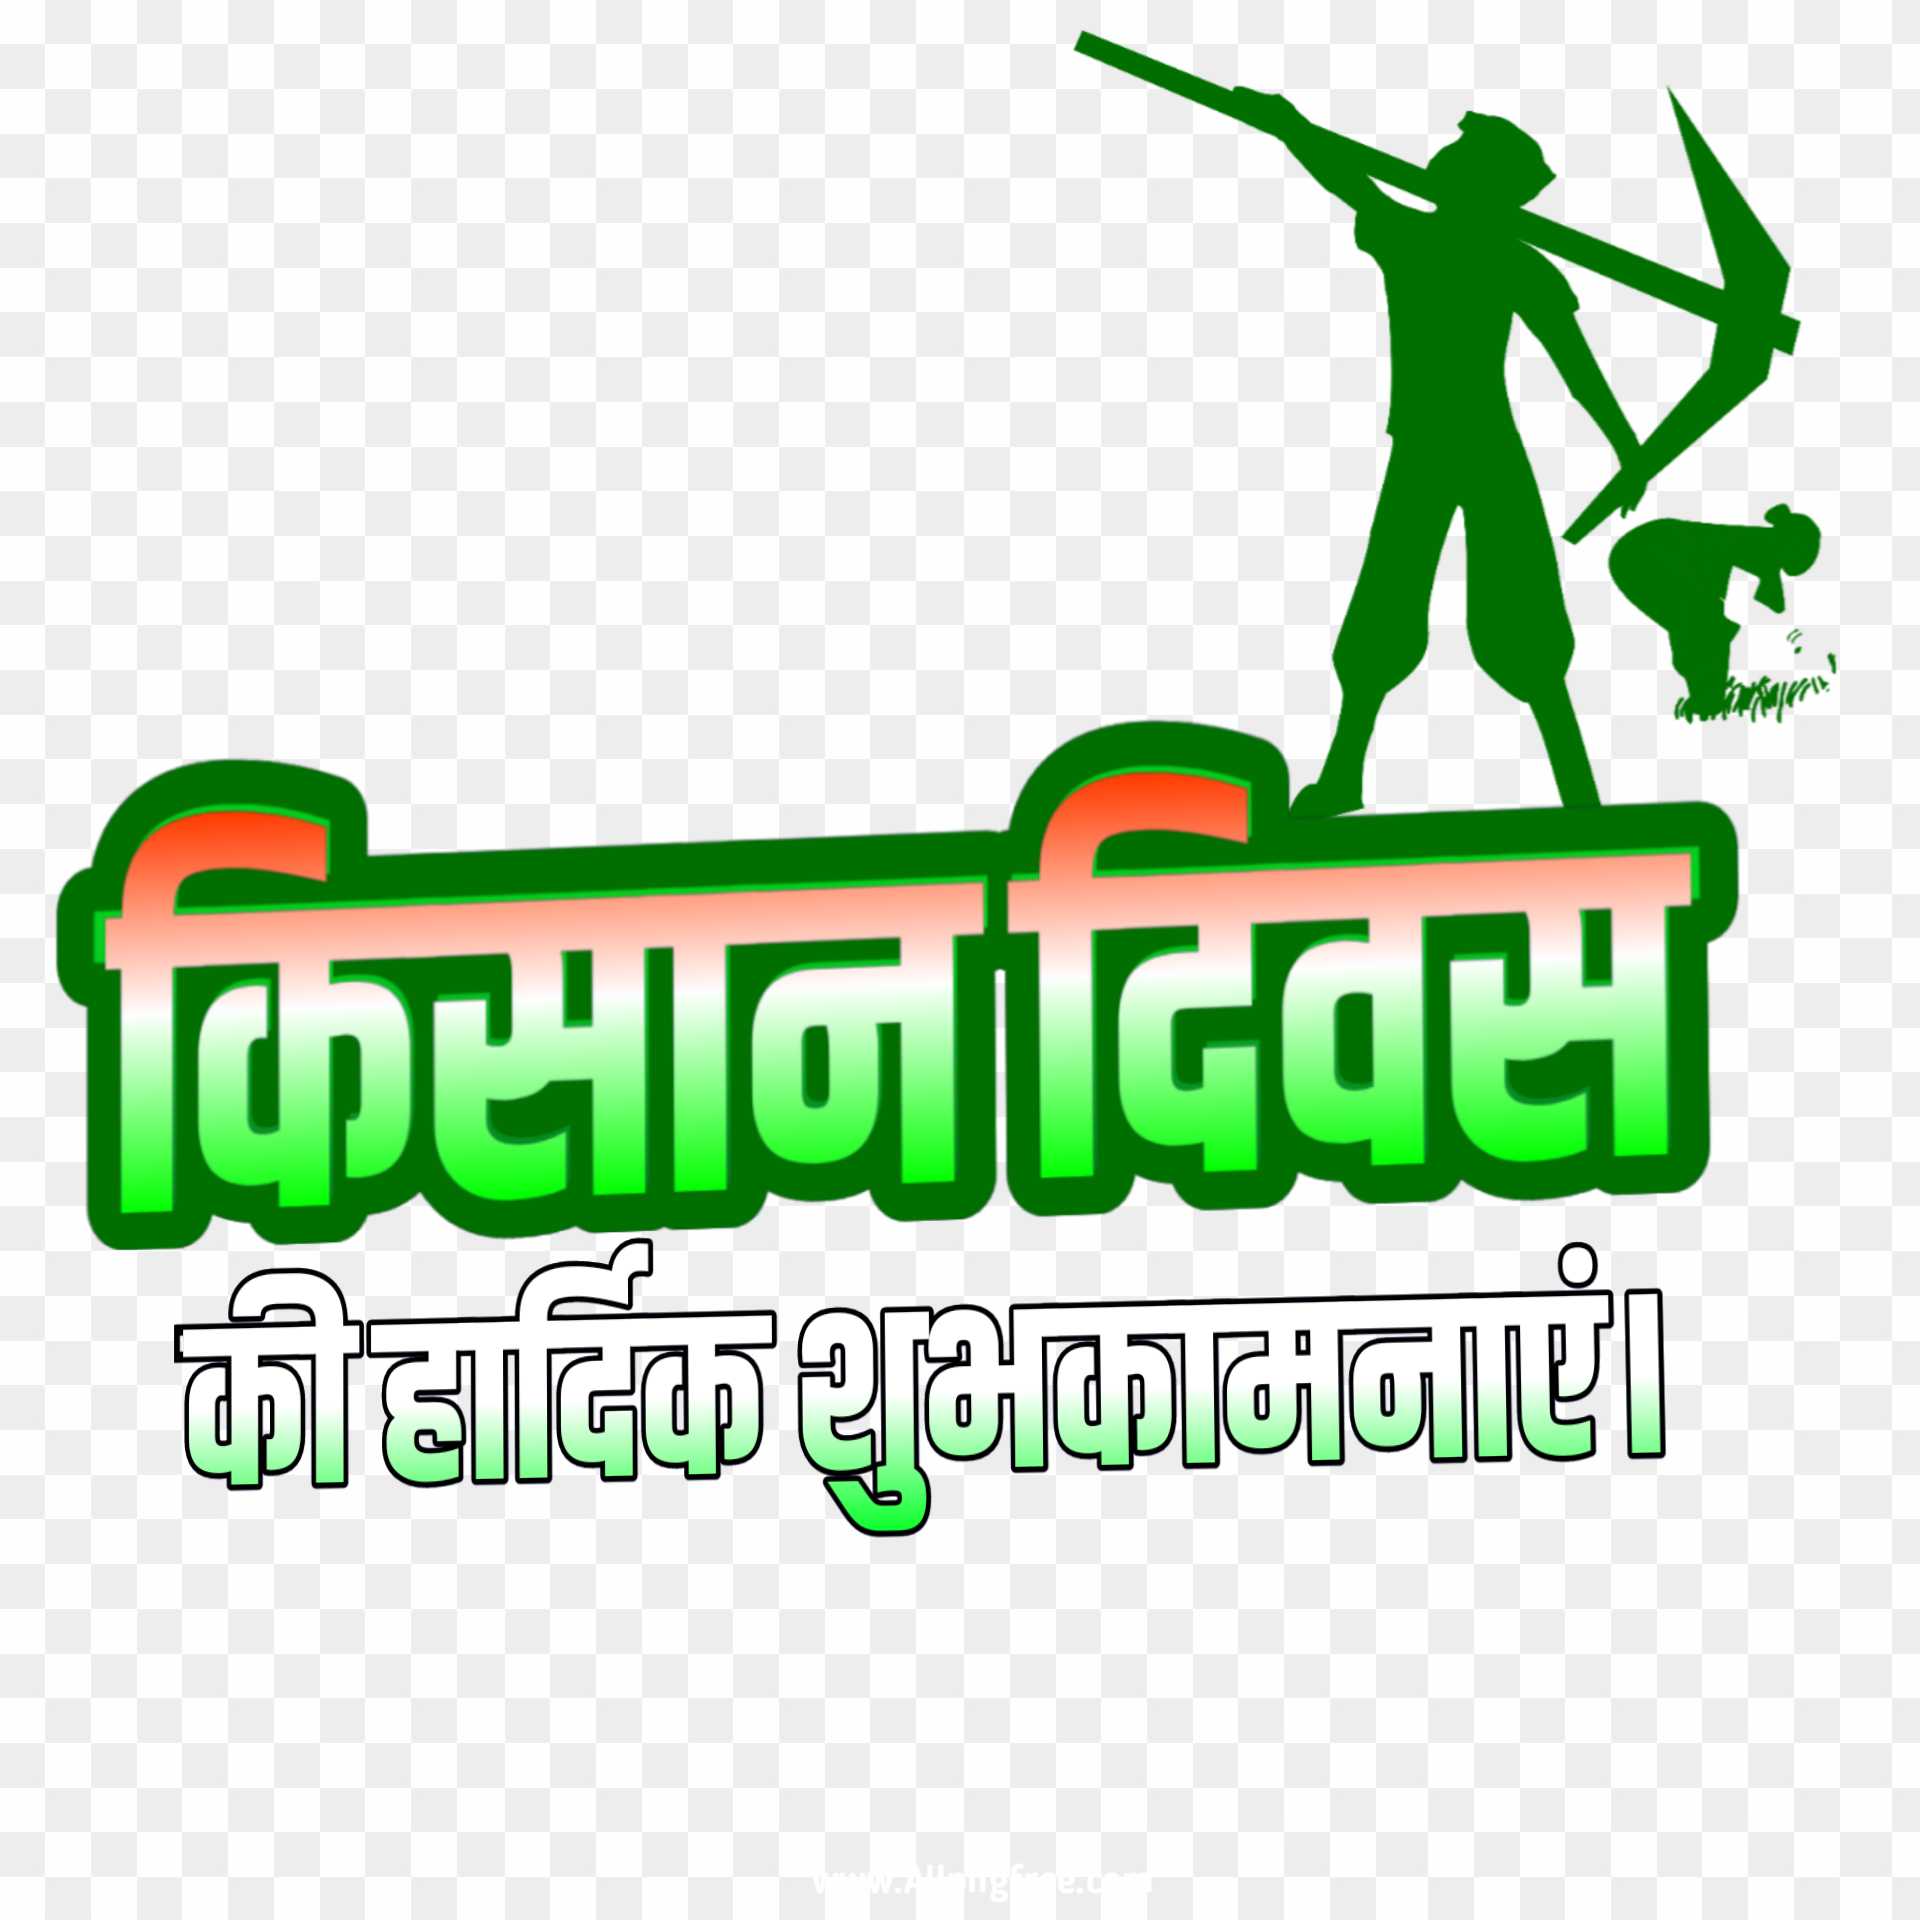 Swachh Bharat Logo png download - 1049*305 - Free Transparent Swachh Bharat  Mission png Download. - CleanPNG / KissPNG